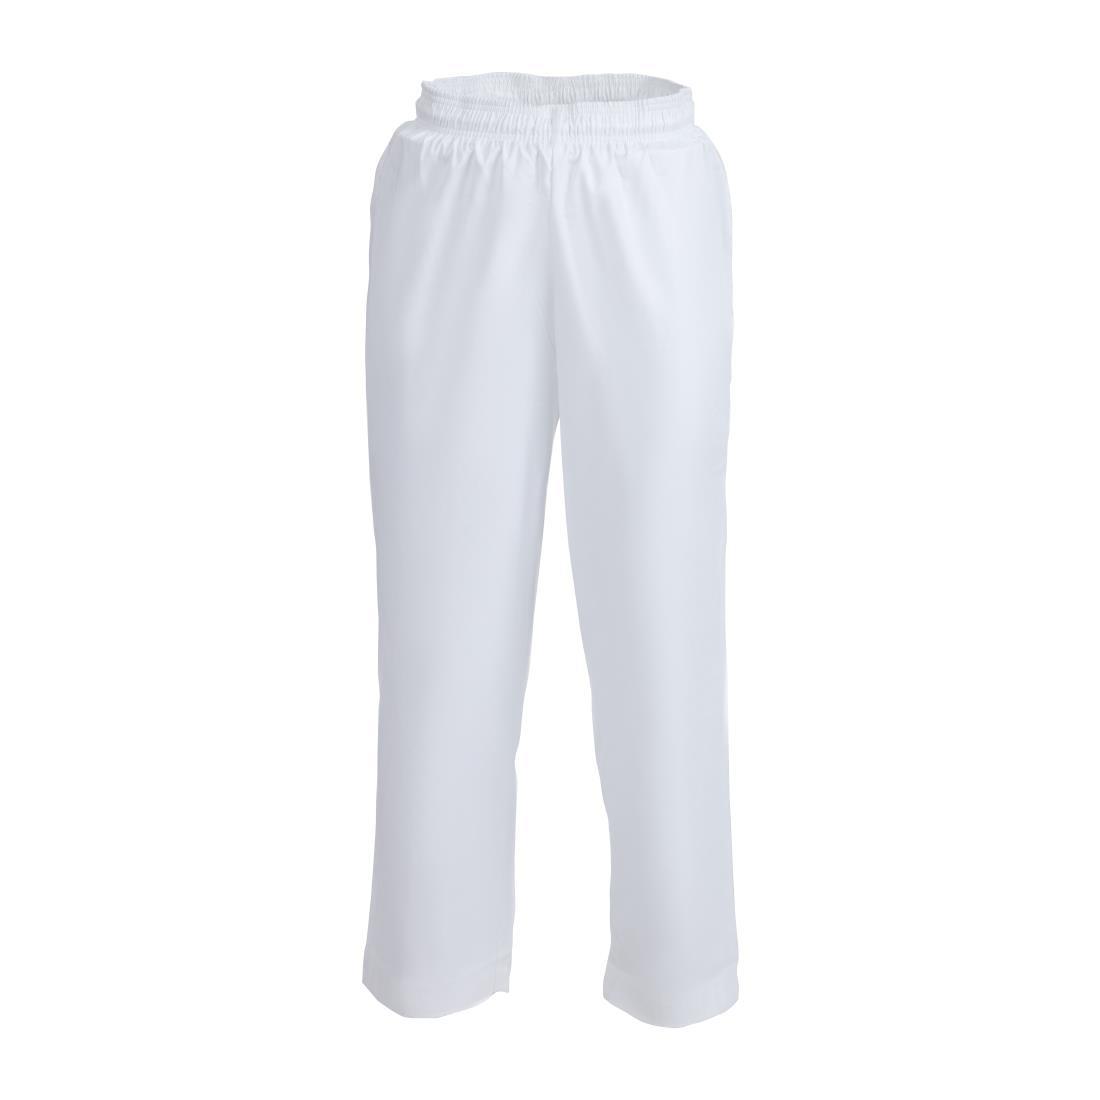 Whites Easyfit Trousers Teflon White L - A575T-L  - 1